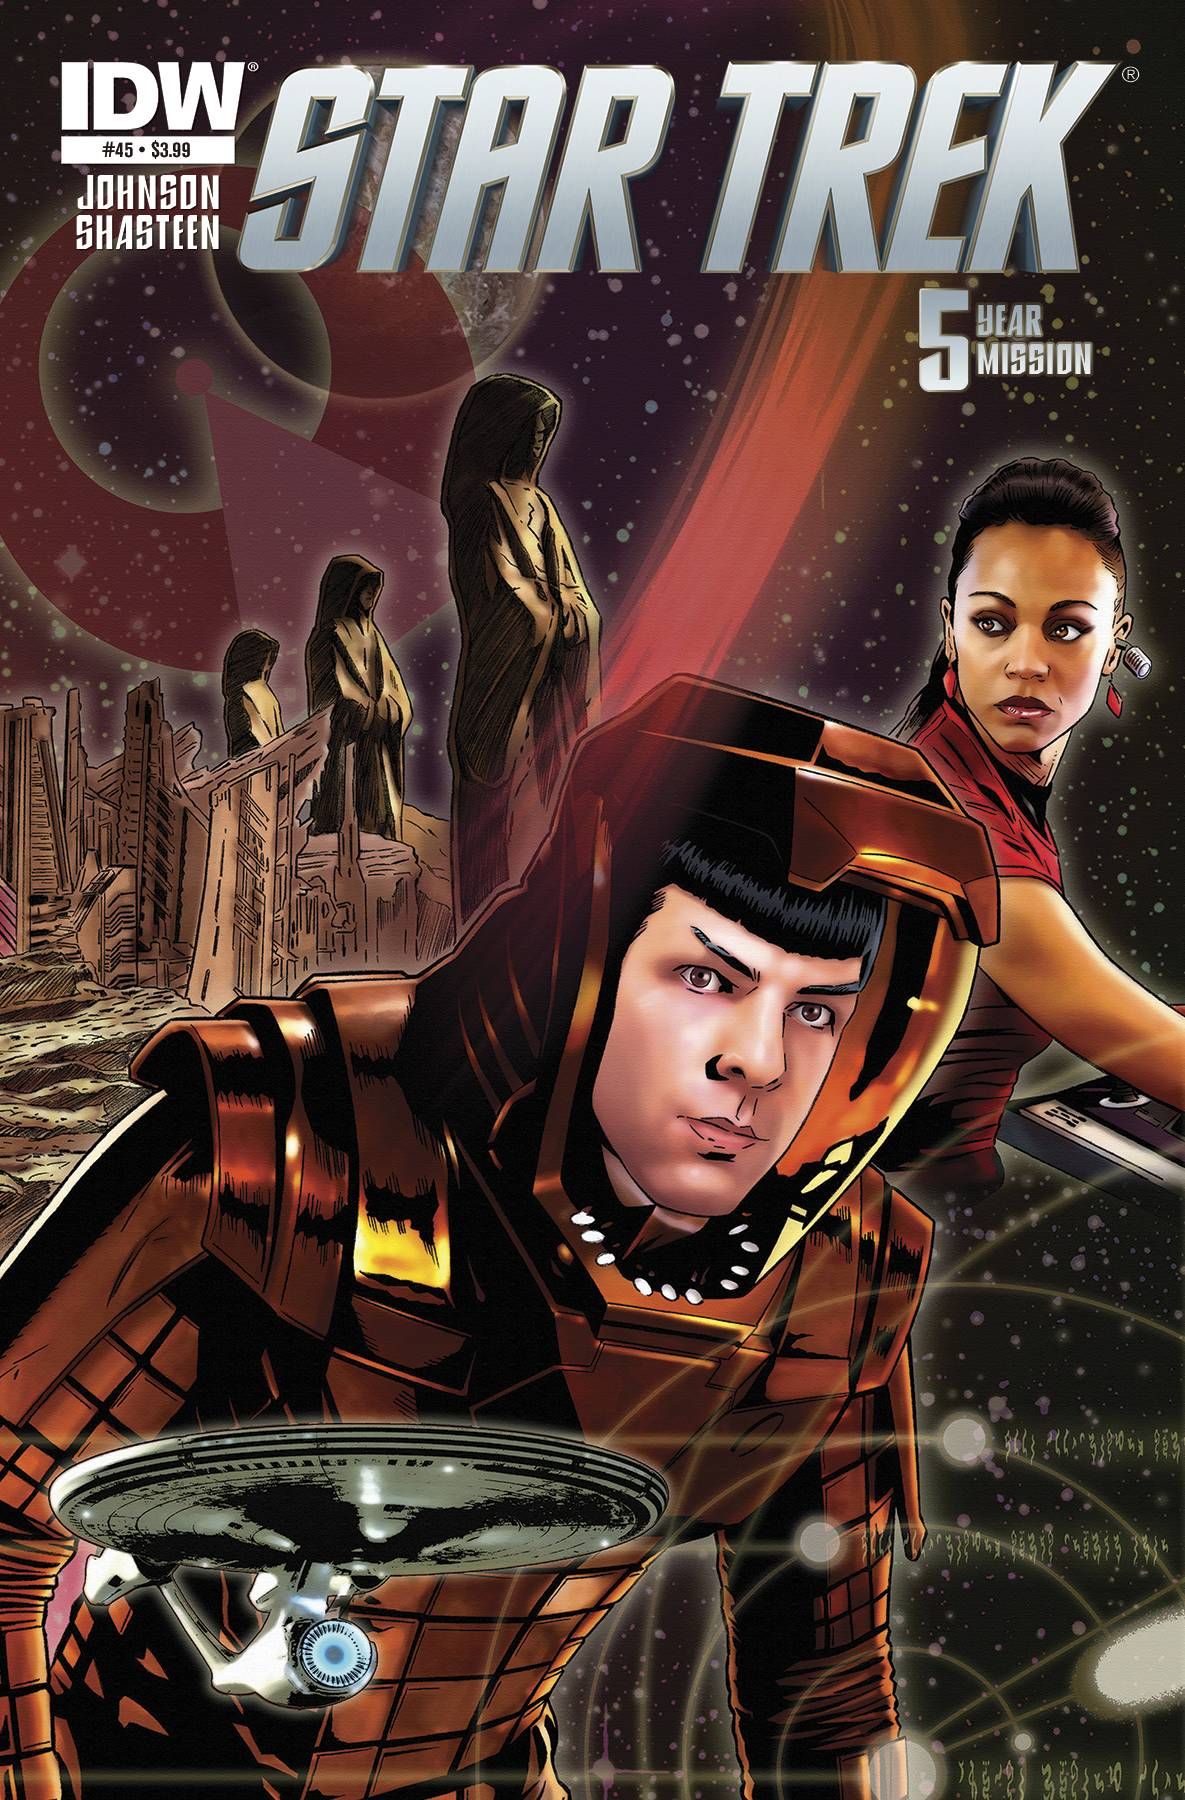 Star Trek #45 Comic